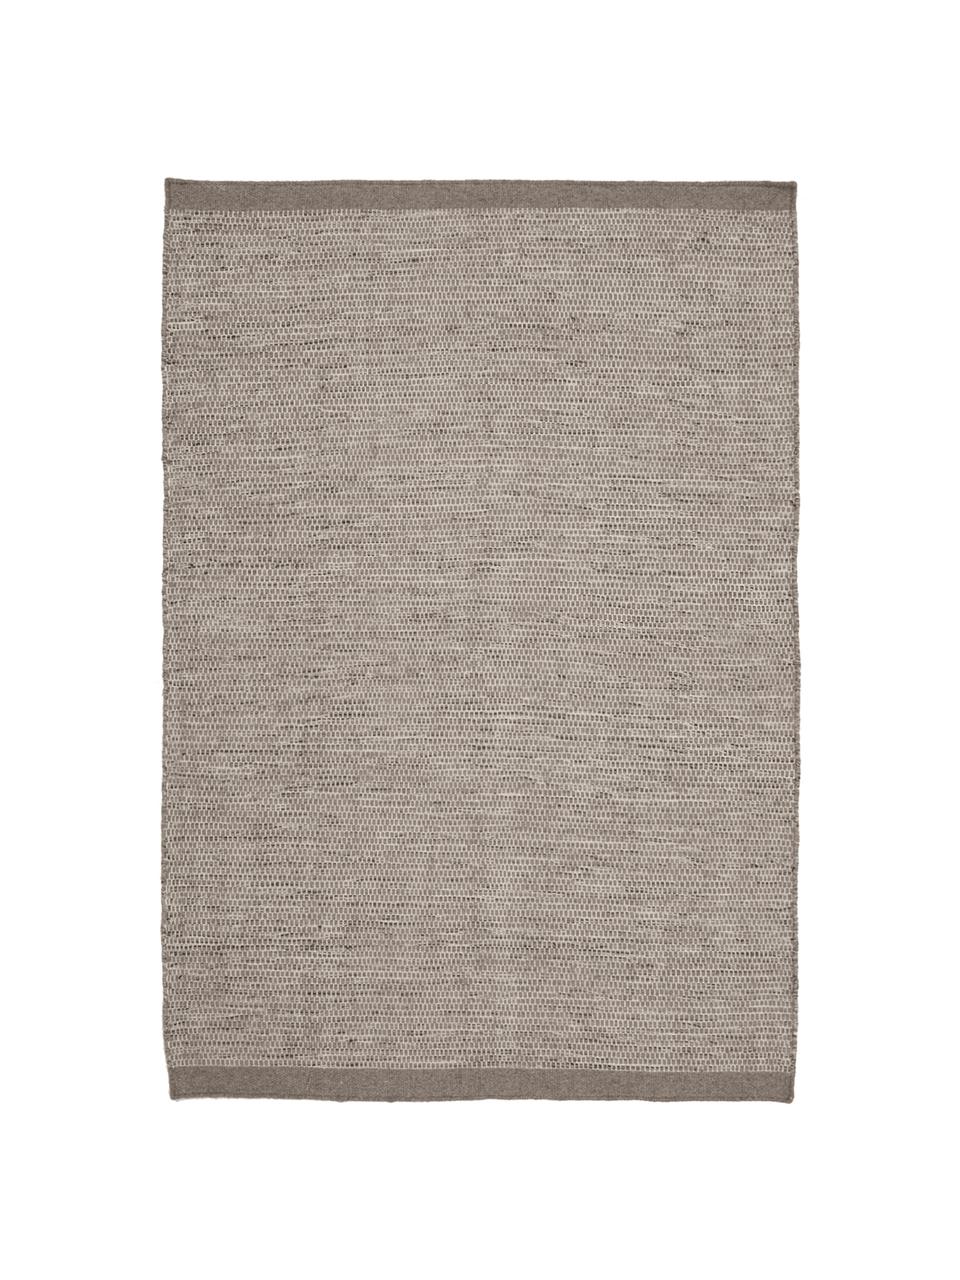 Handgeweven wollen vloerkleed Asko in grijstinten, Bovenzijde: 90% wol, 10% katoen, Onderzijde: katoen, Lichtgrijs/grijs, B 200 x L 300 cm (maat L)